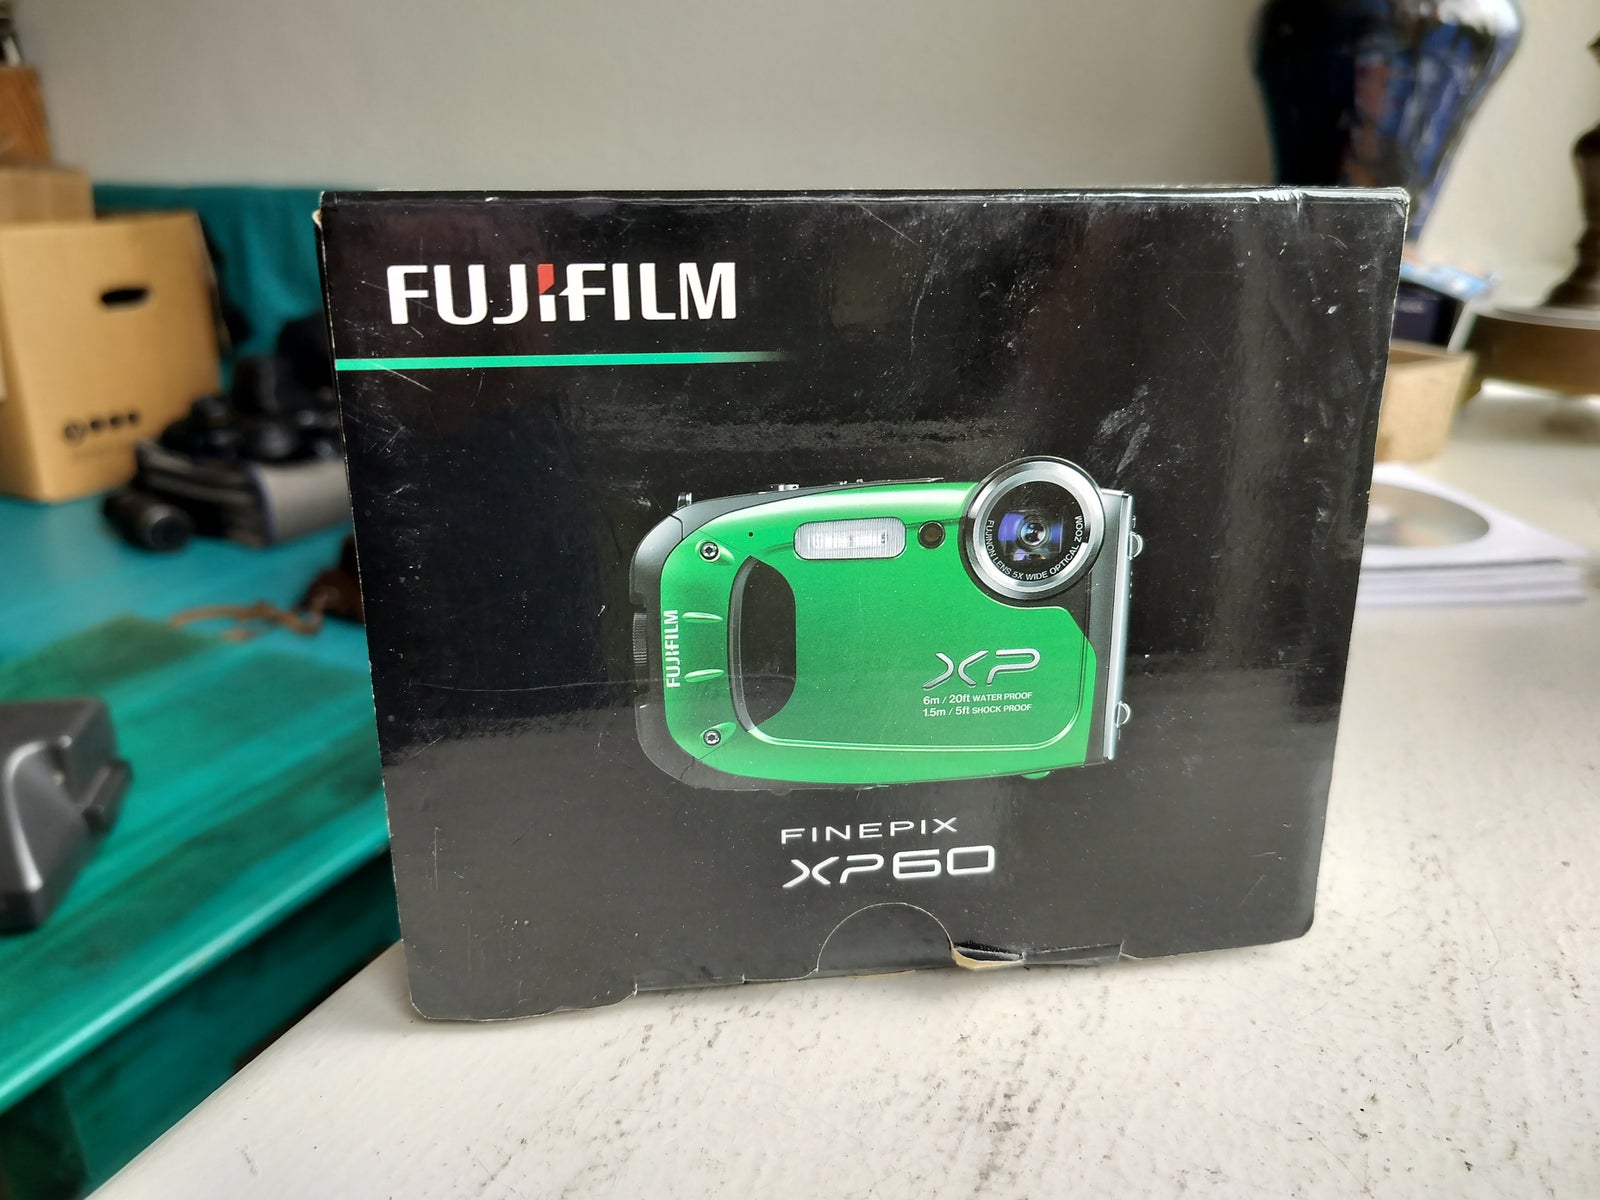 Fujifilm, XP60, 16.0 megapixels